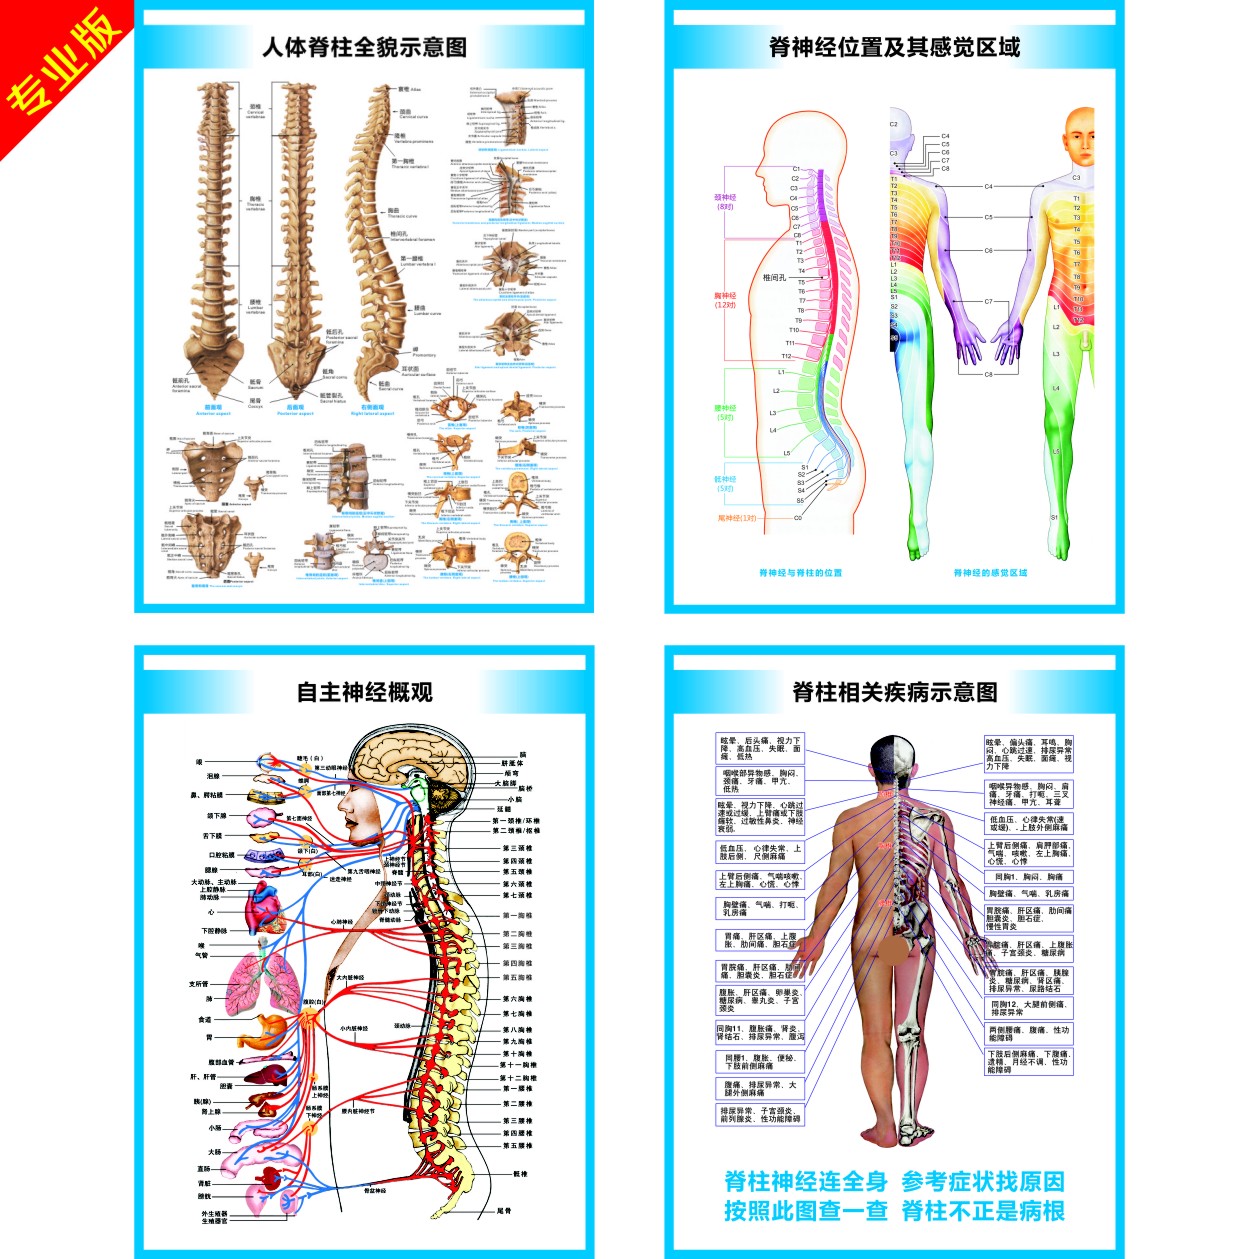 脊柱相关疾病示意图脊椎结构图脊神经构造自主神经肌肉疼痛区挂图